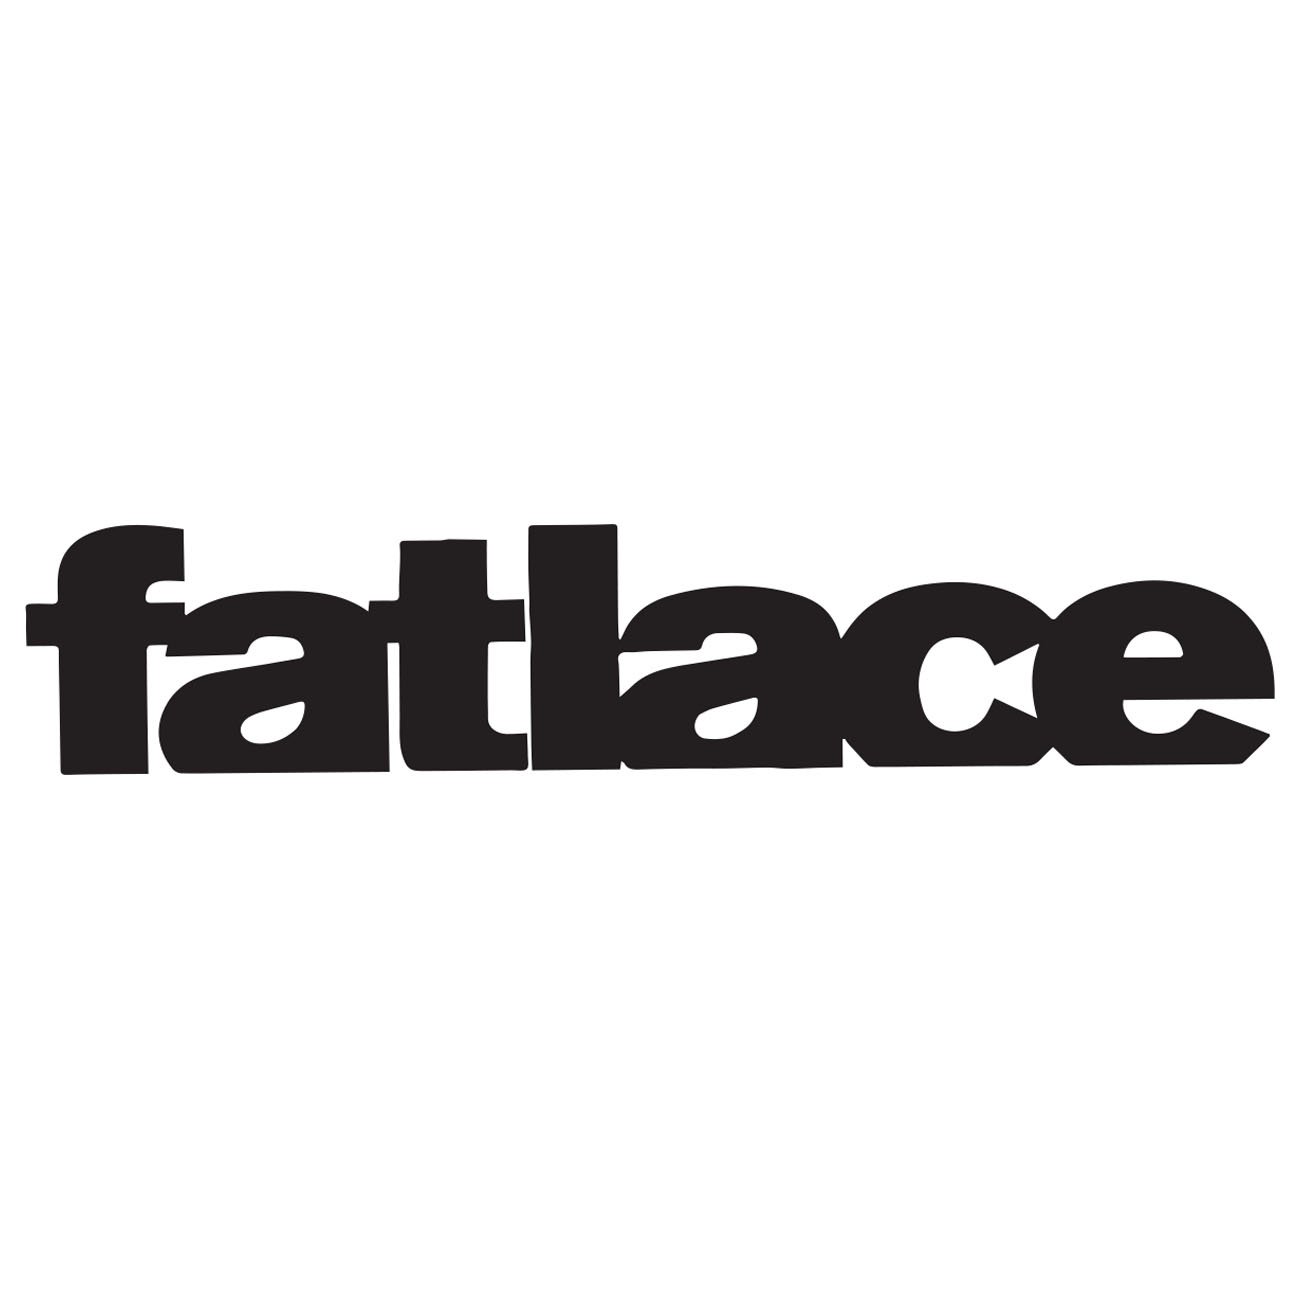 Fatlace